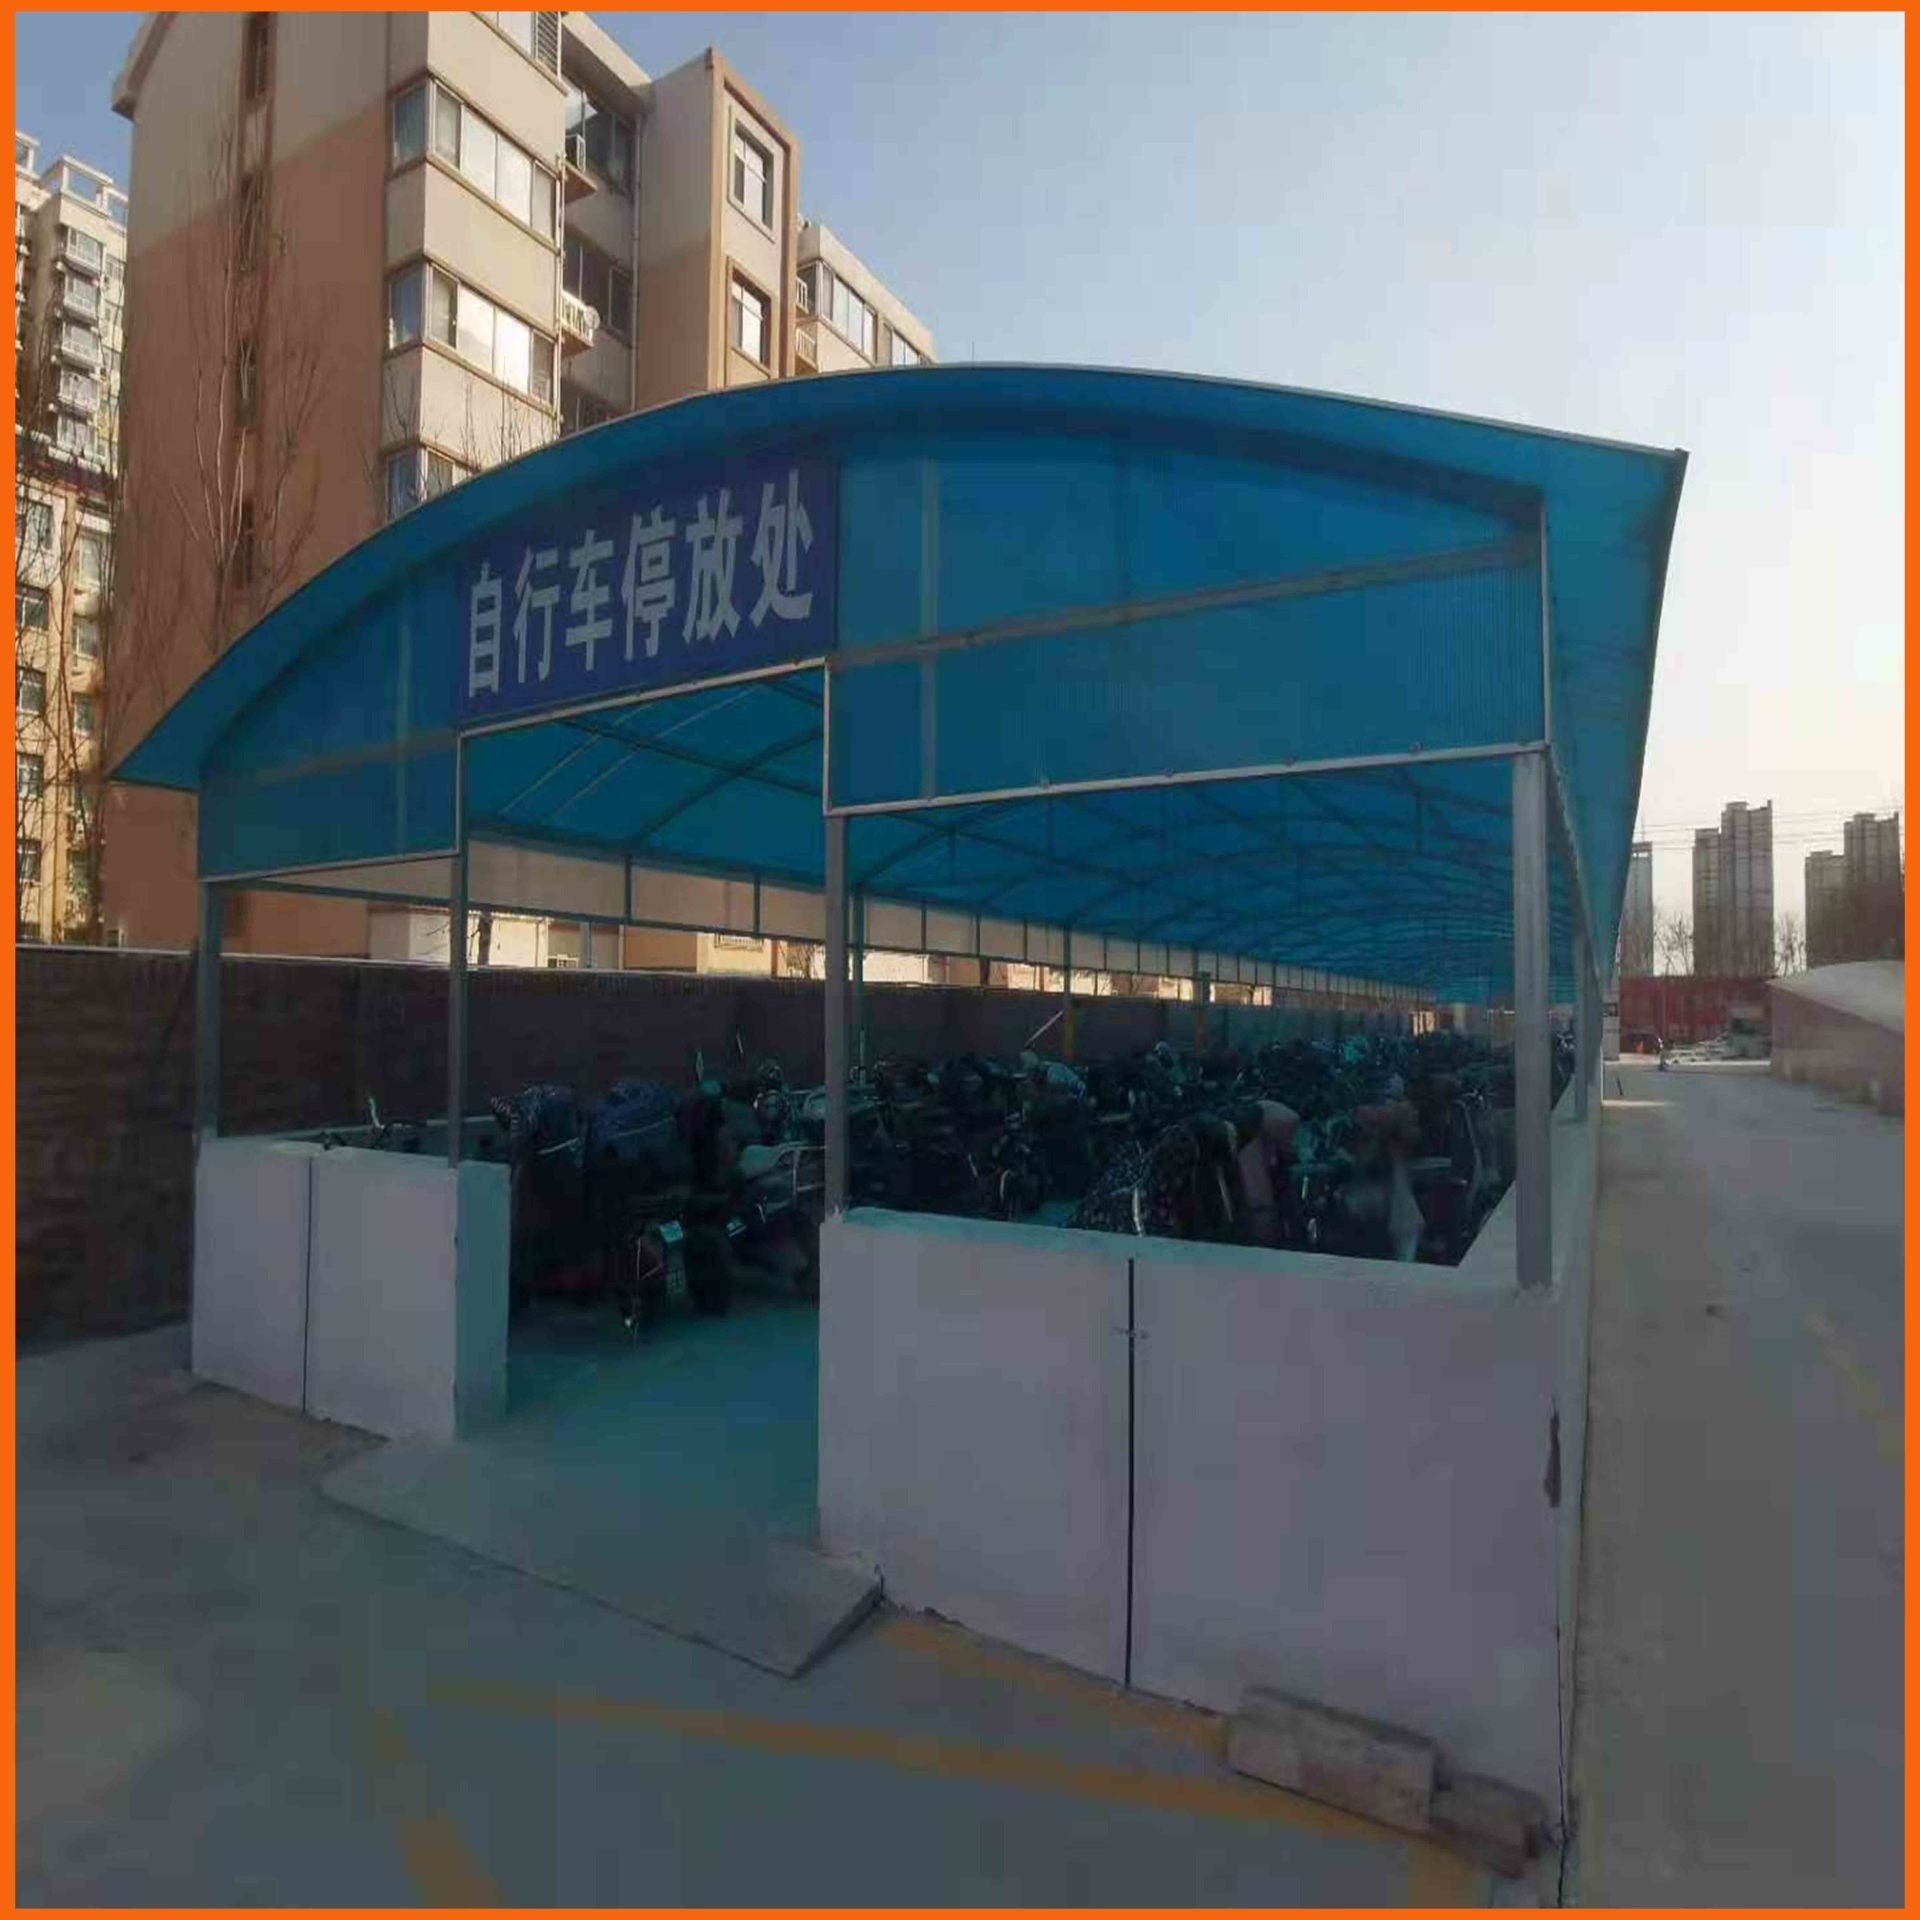 扬州自行车棚PC阳光板 8毫米蓝色阳光板 双层单腔PC阳光板厂家